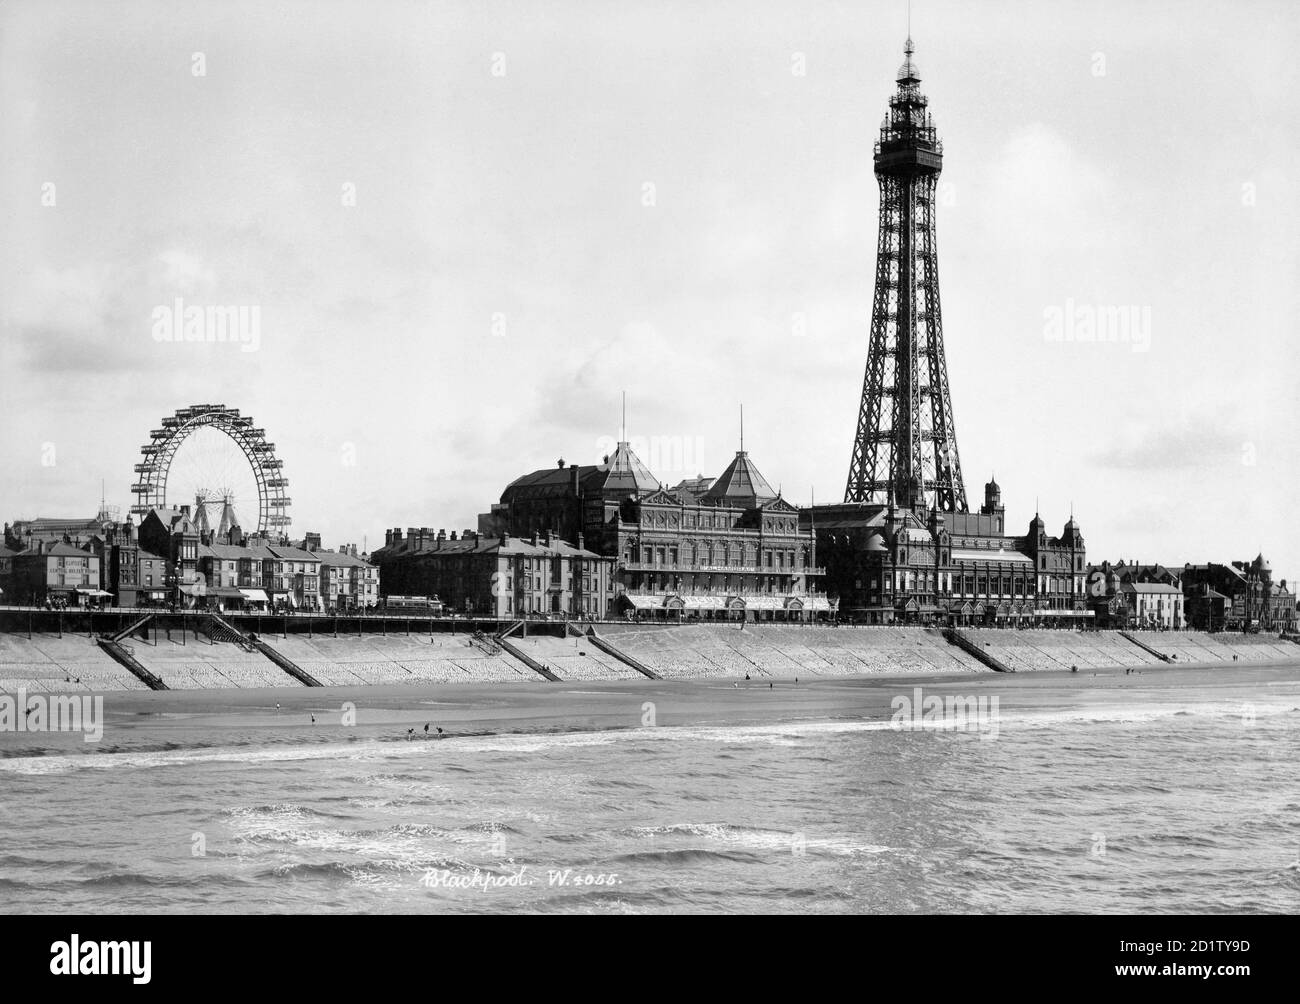 BLACKPOOL, Lancashire. Una vista che guarda a sud-est dal North Pier verso la Blackpool Tower con la Grande ruota visibile sullo sfondo. La torre fu costruita nel 1891-4 da Maxwell e Tuke e fu basata sul design della Torre Eiffel di Parigi. Fotografato tra il 1894 e il 1910 da W e Co. Foto Stock